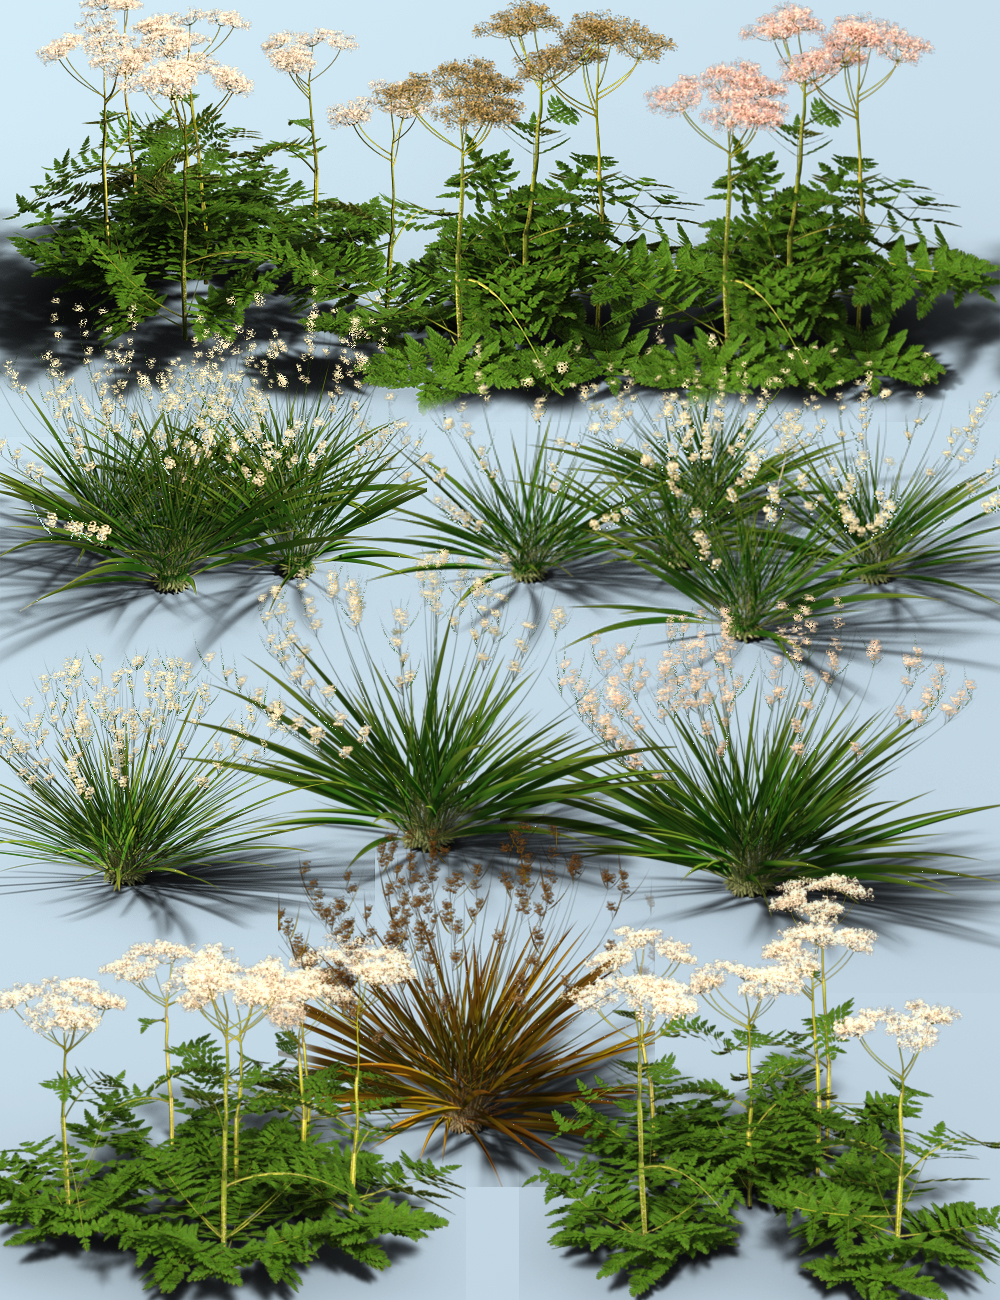 Woodland Wild Flower Plants for Daz Studio by: MartinJFrost, 3D Models by Daz 3D